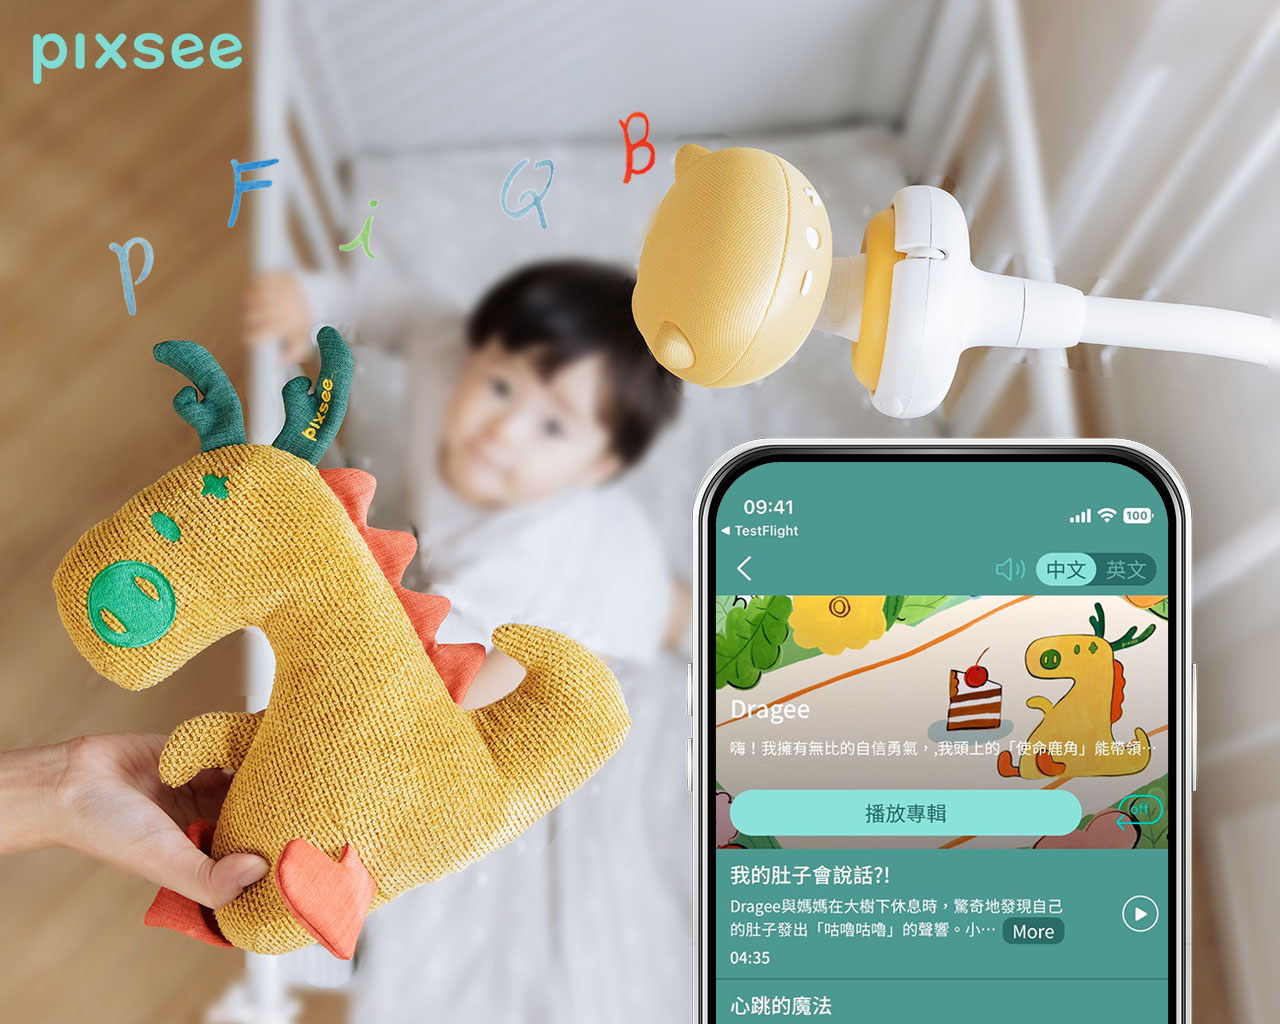 守護寶寶與遊戲陪伴最新智慧神隊友　Pixsee攝影機AI互動玩具龍年新款登場